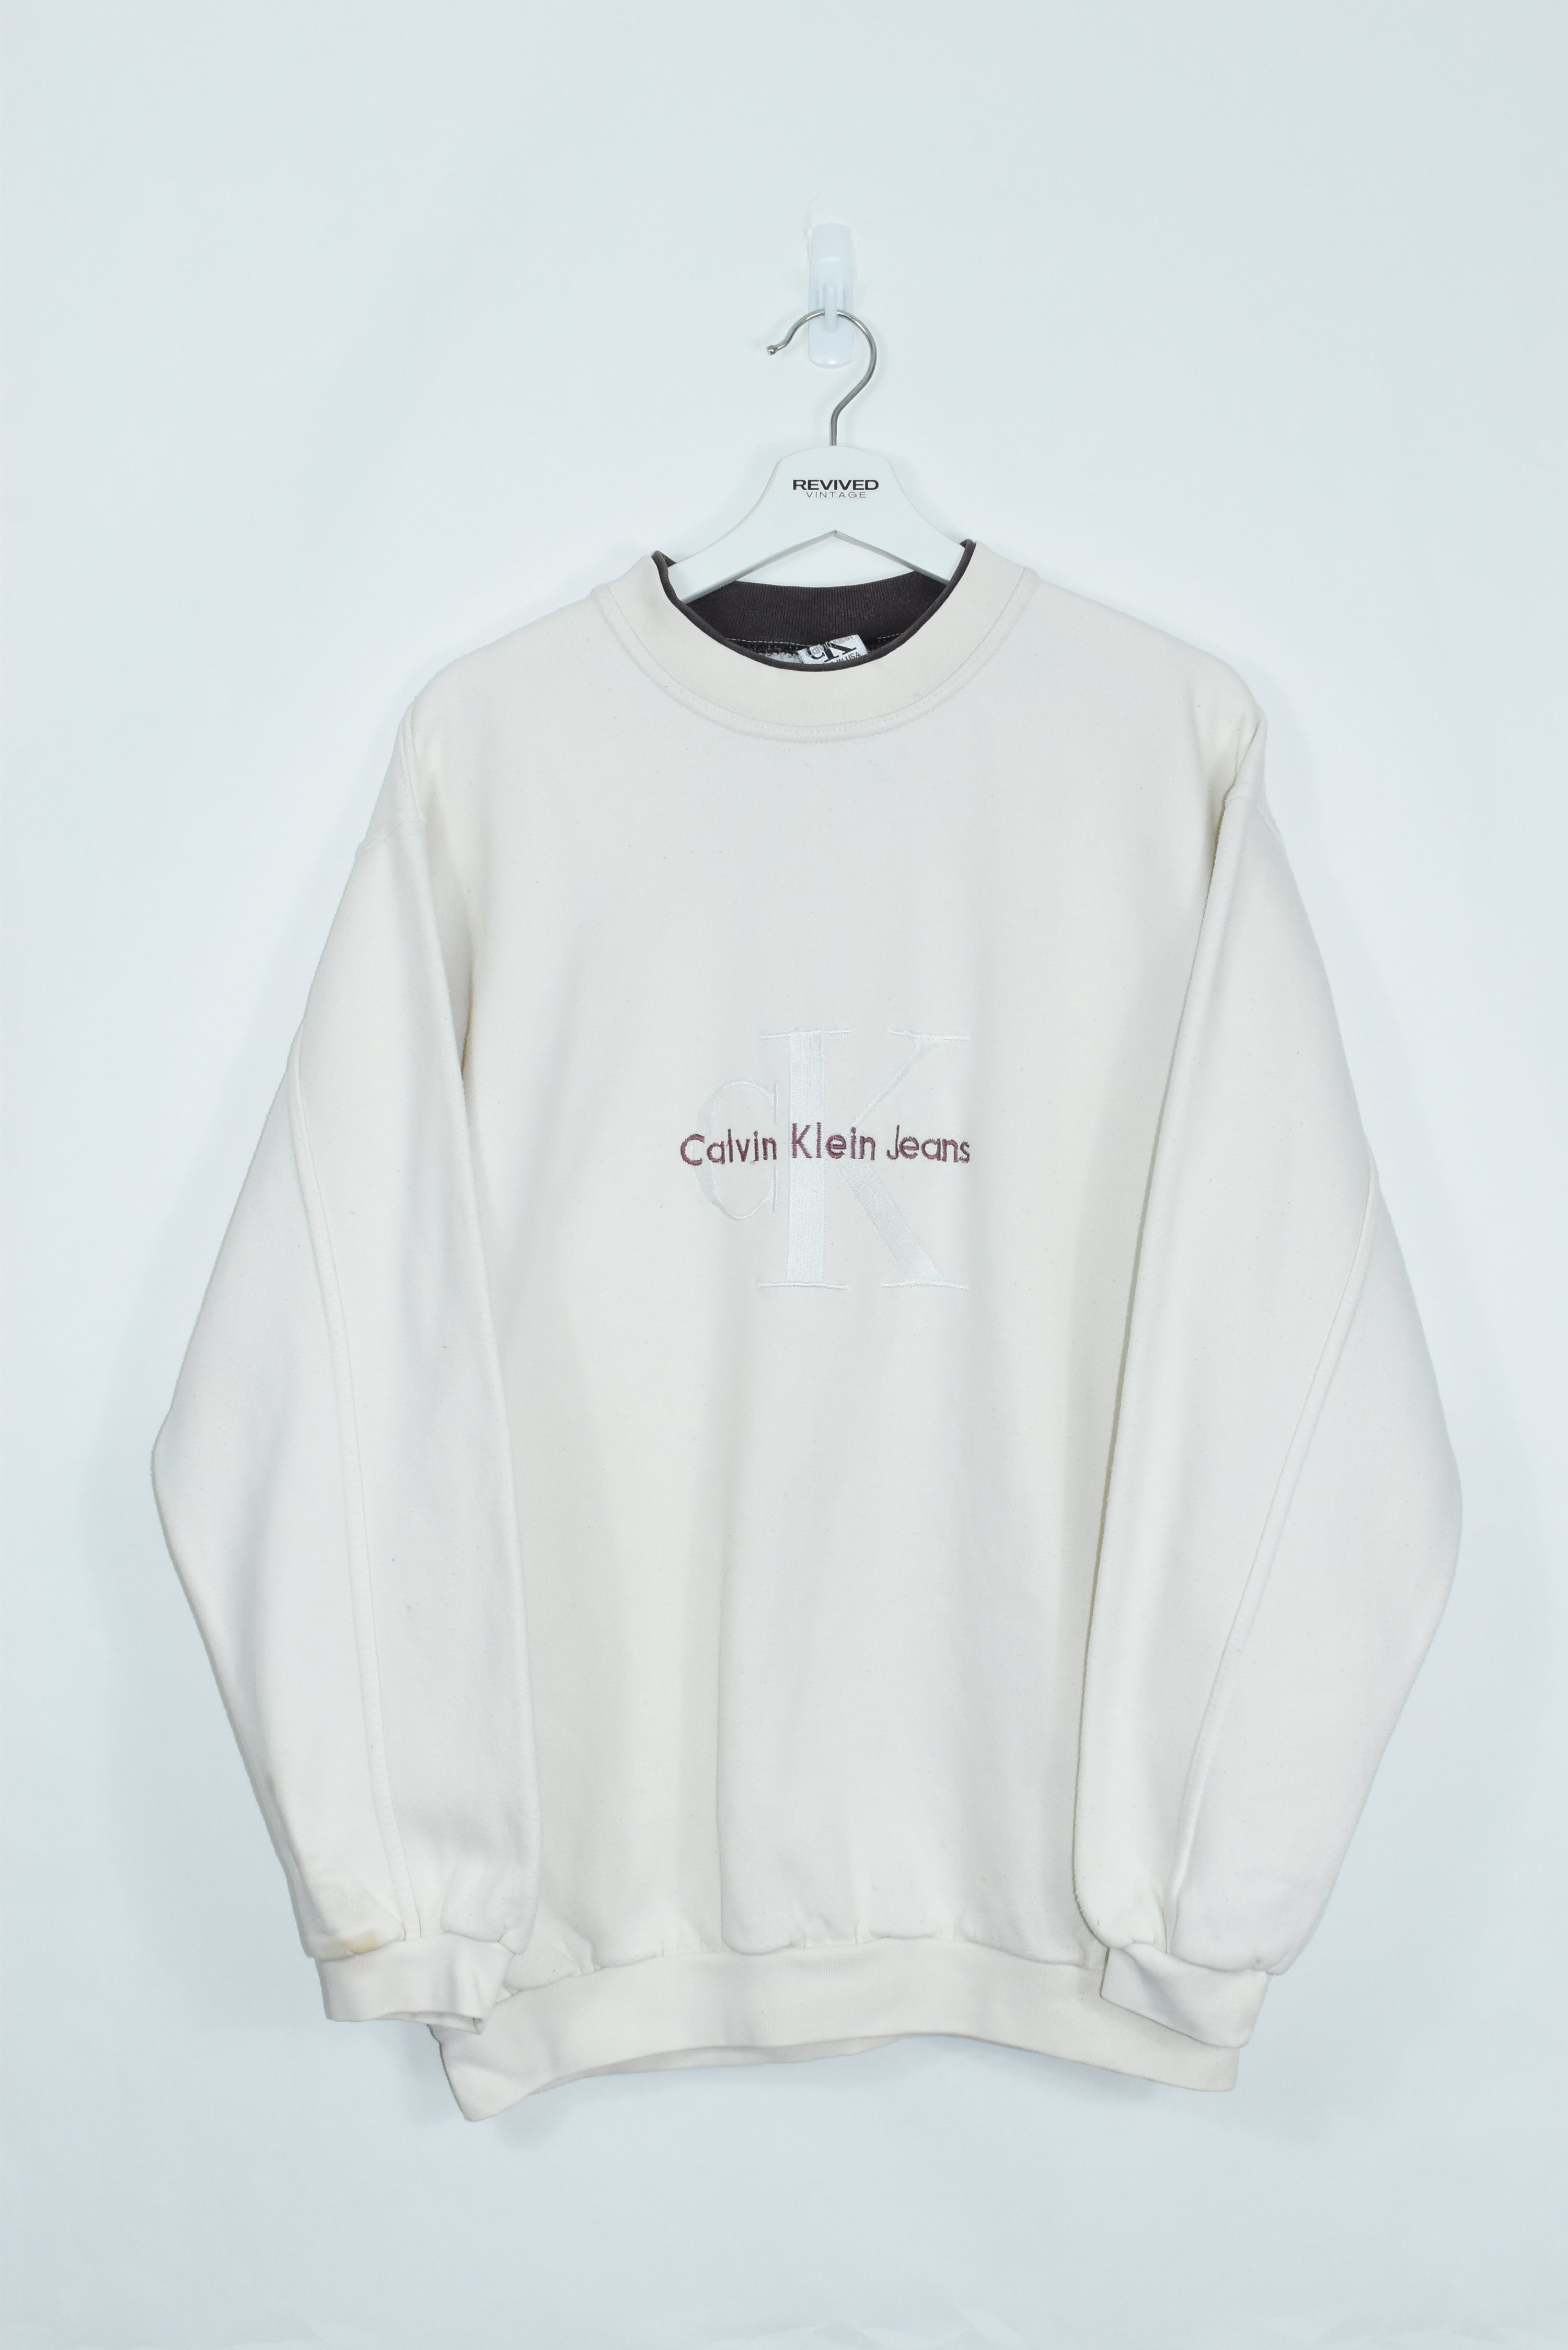 Vintage Calvin Klein Embroidered Sweatshirt Xlarge